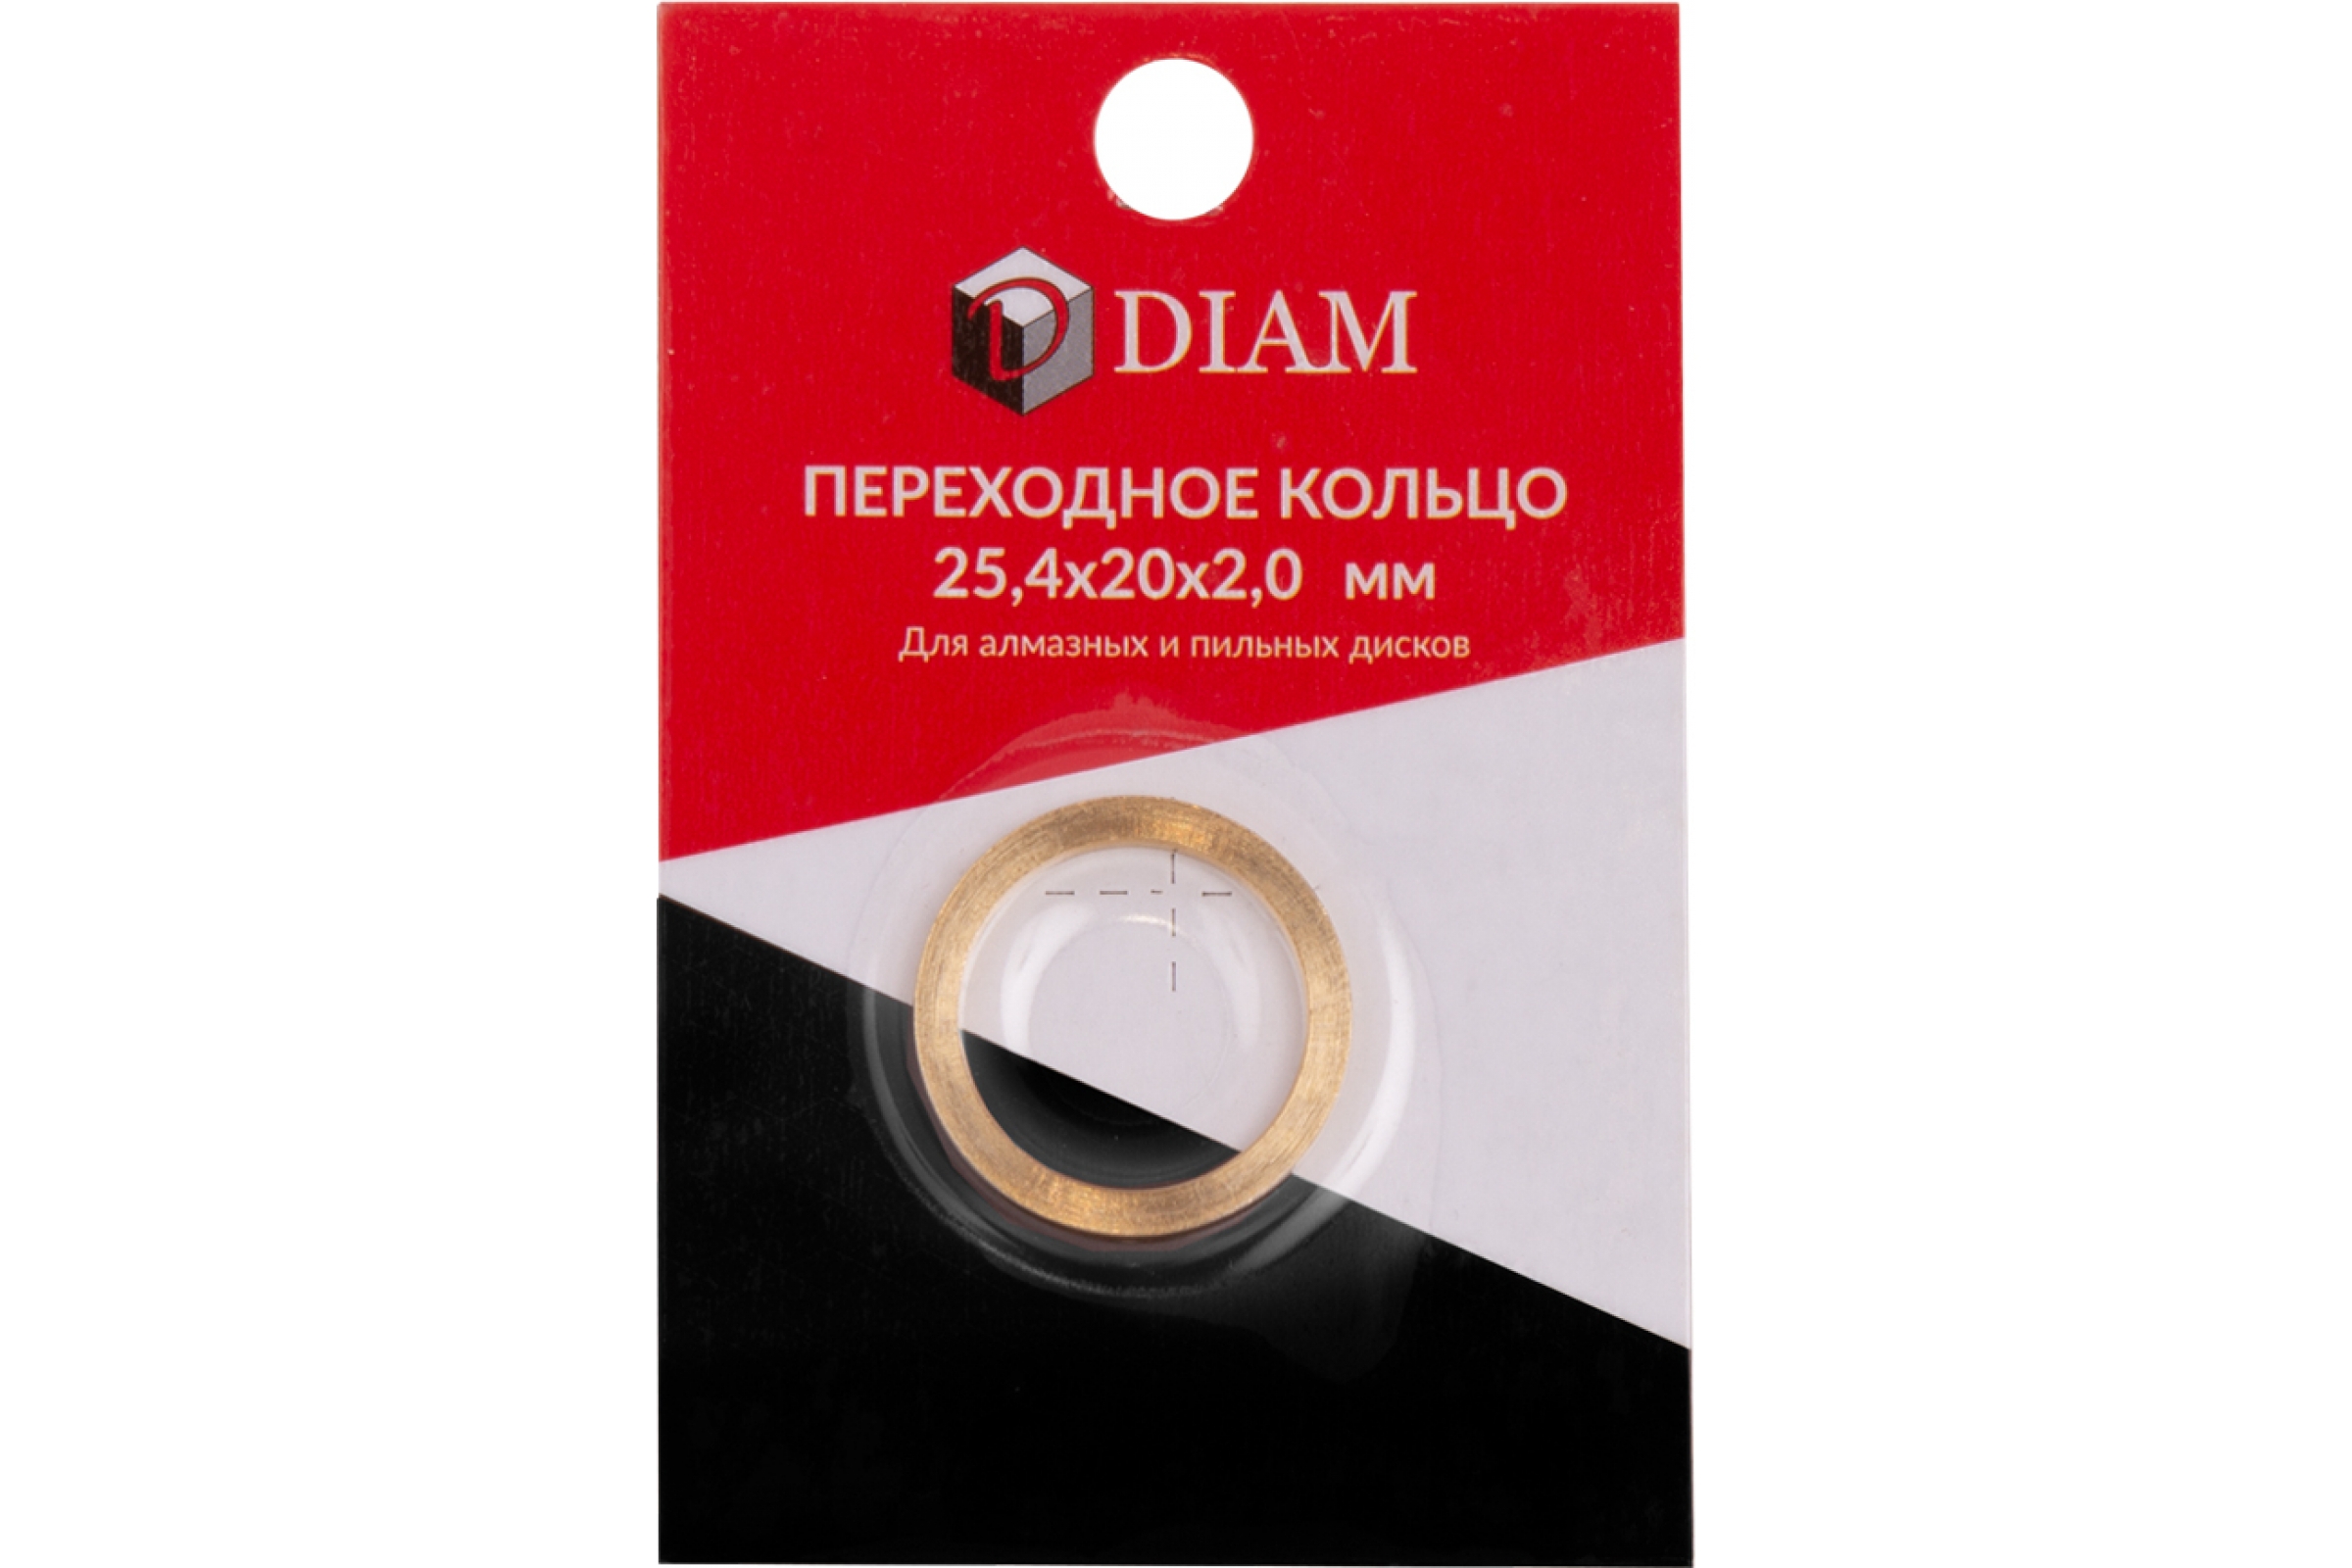 Кольцо переходное DIAM 25,4х20х2,0 (640083) (DIAM) стопорное кольцо для пневматического насоса diam 42 piusi